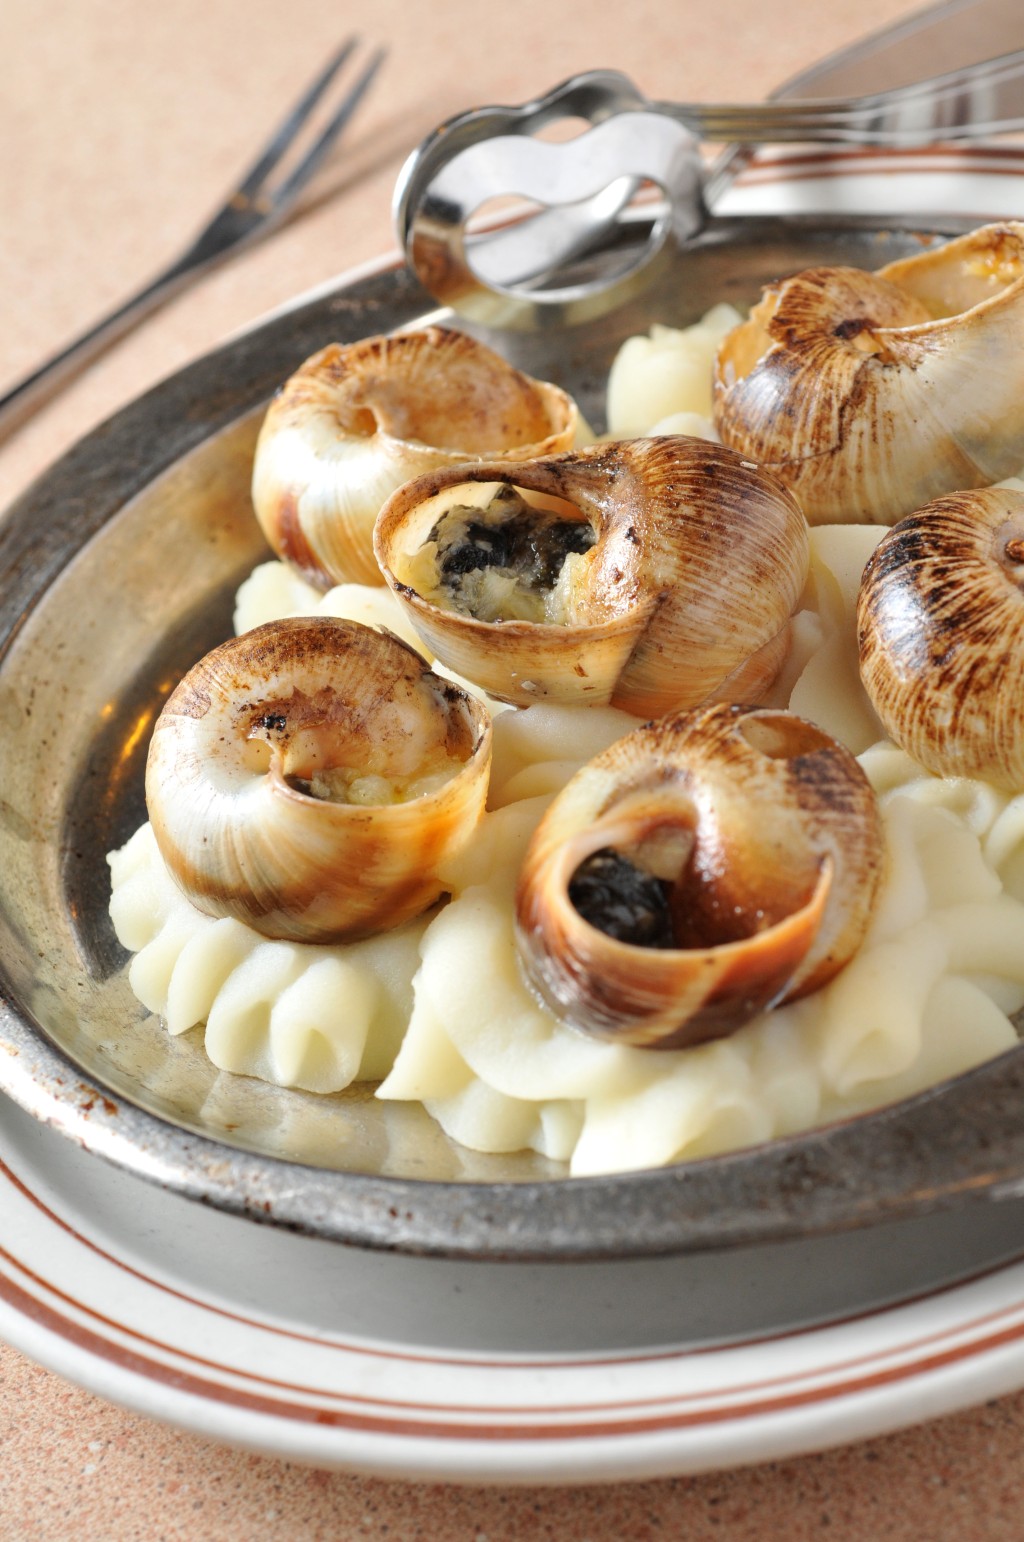 另一道经典菜式是田螺焗薯蓉。